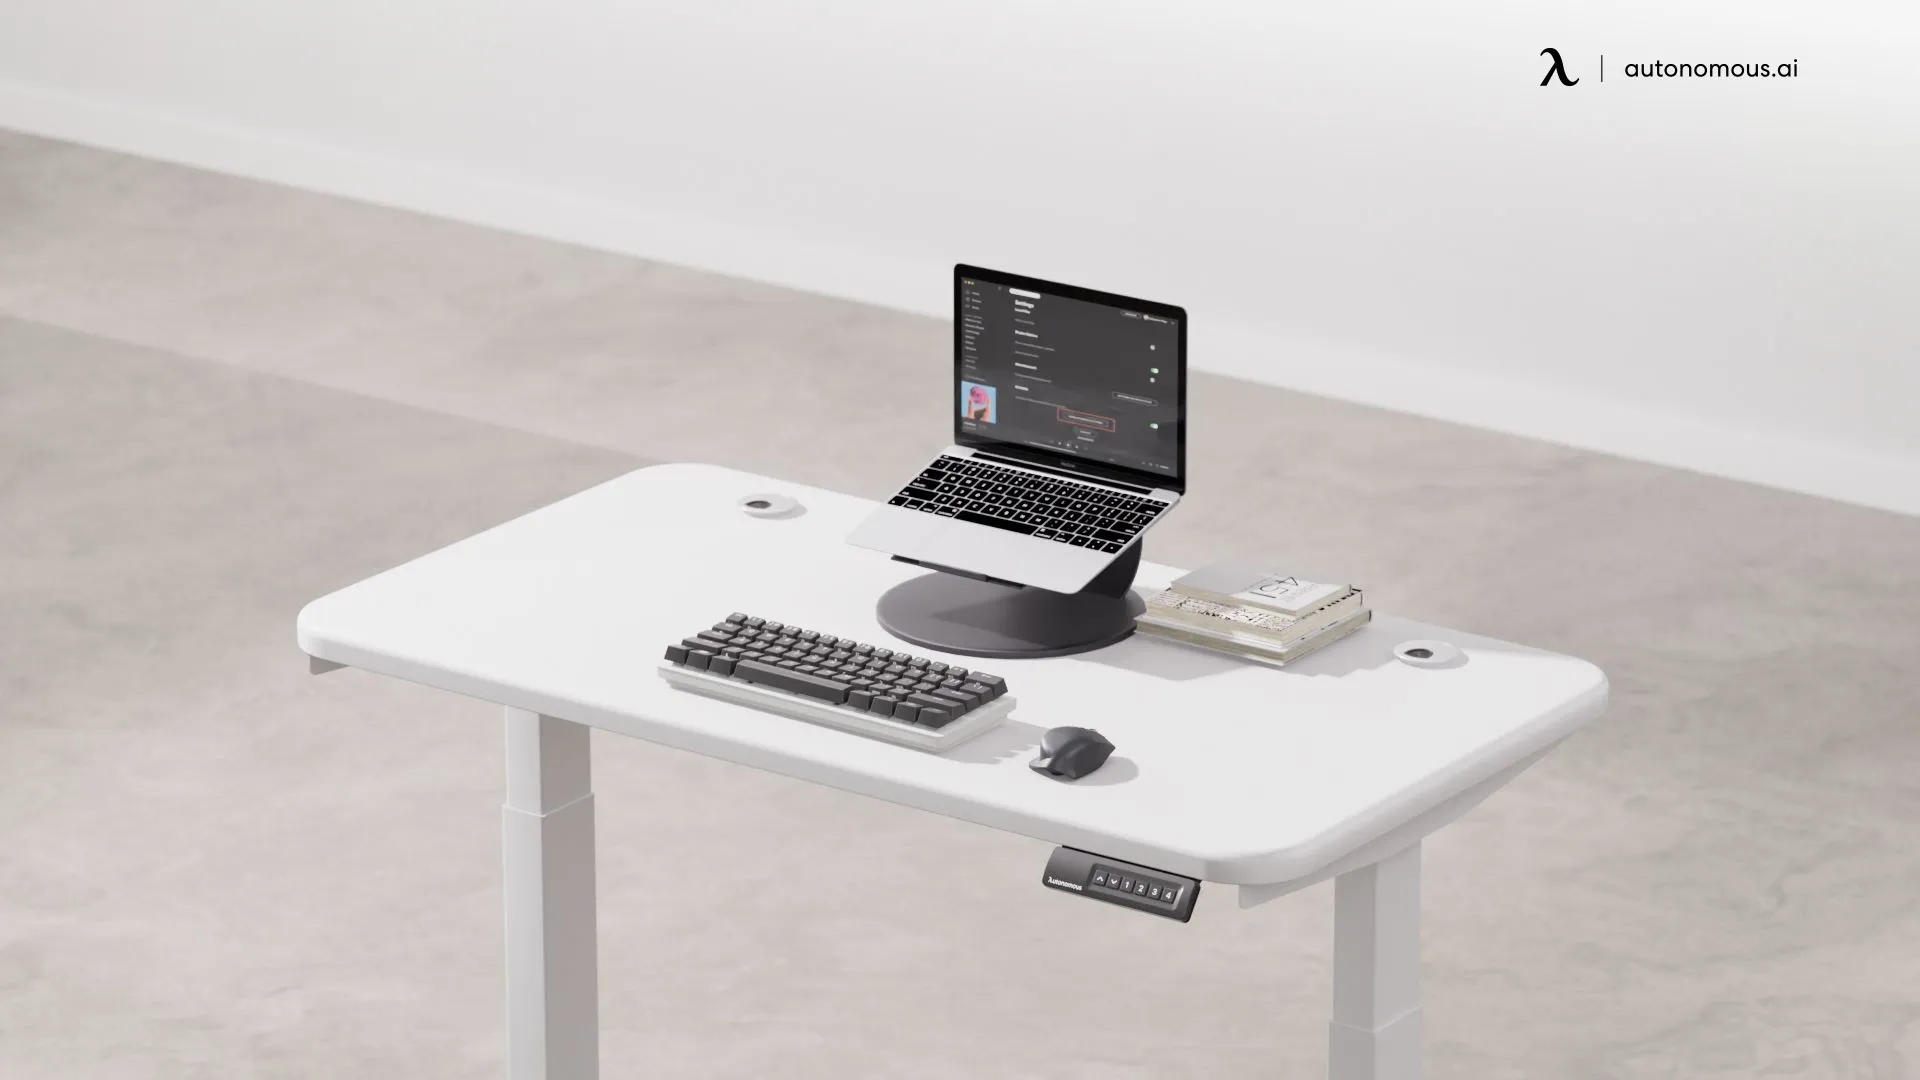 How to Unlock the Autonomous Standing Desk?